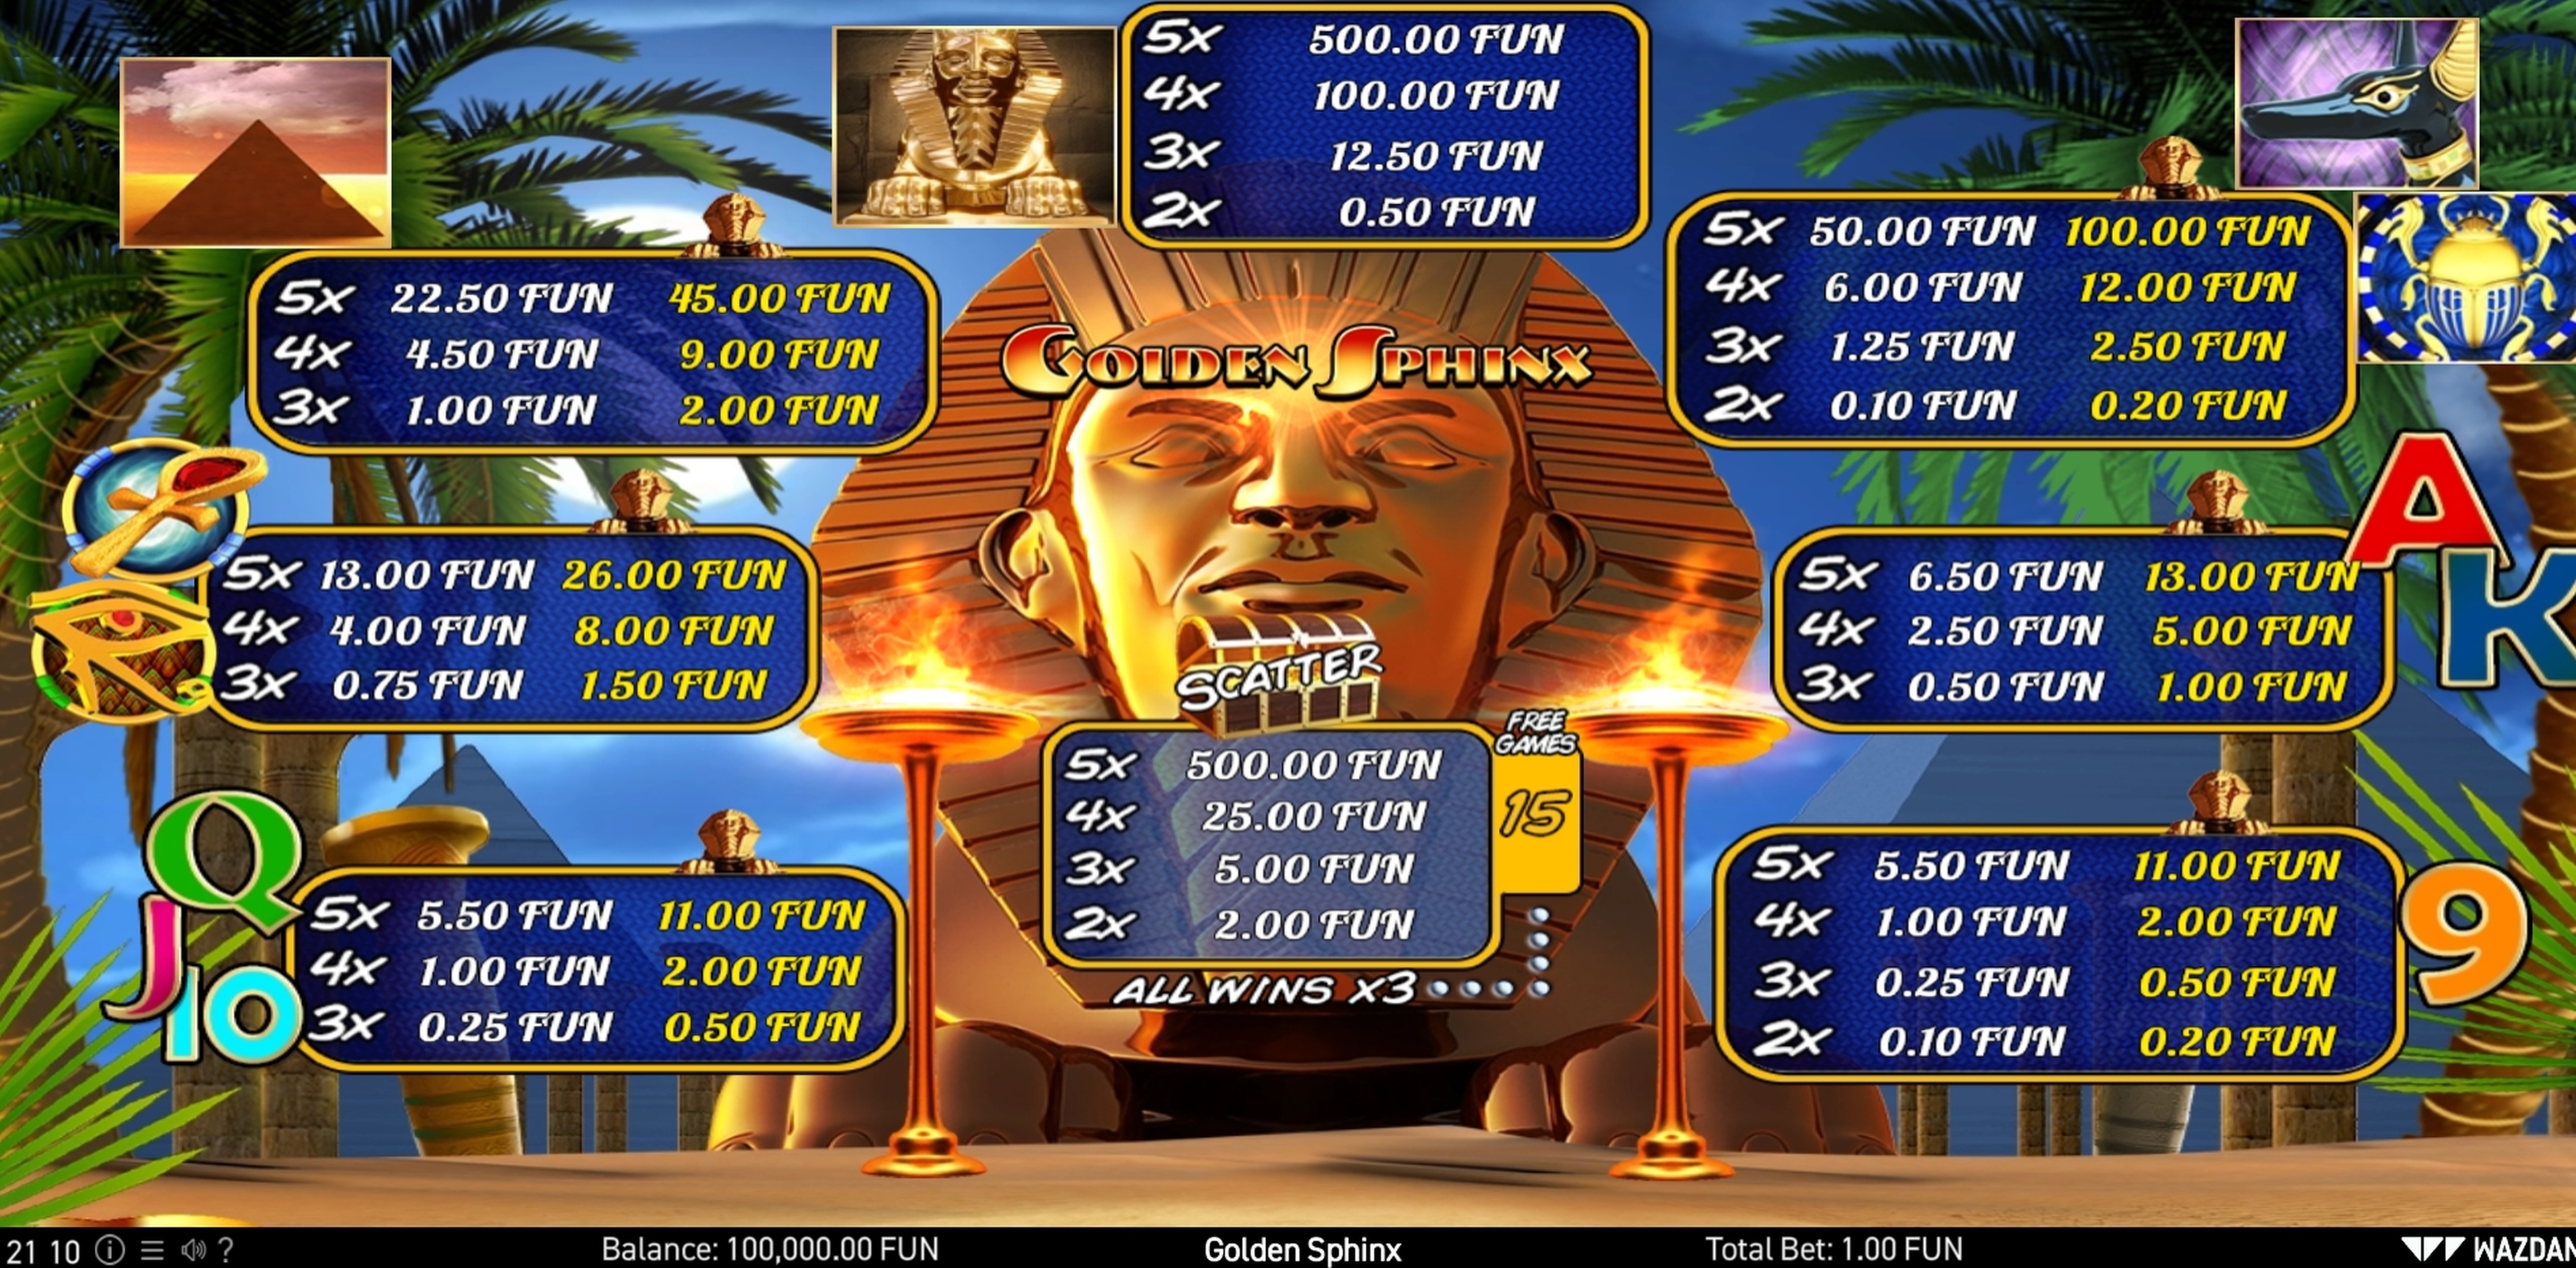 Info of Golden Sphinx Slot Game by Wazdan